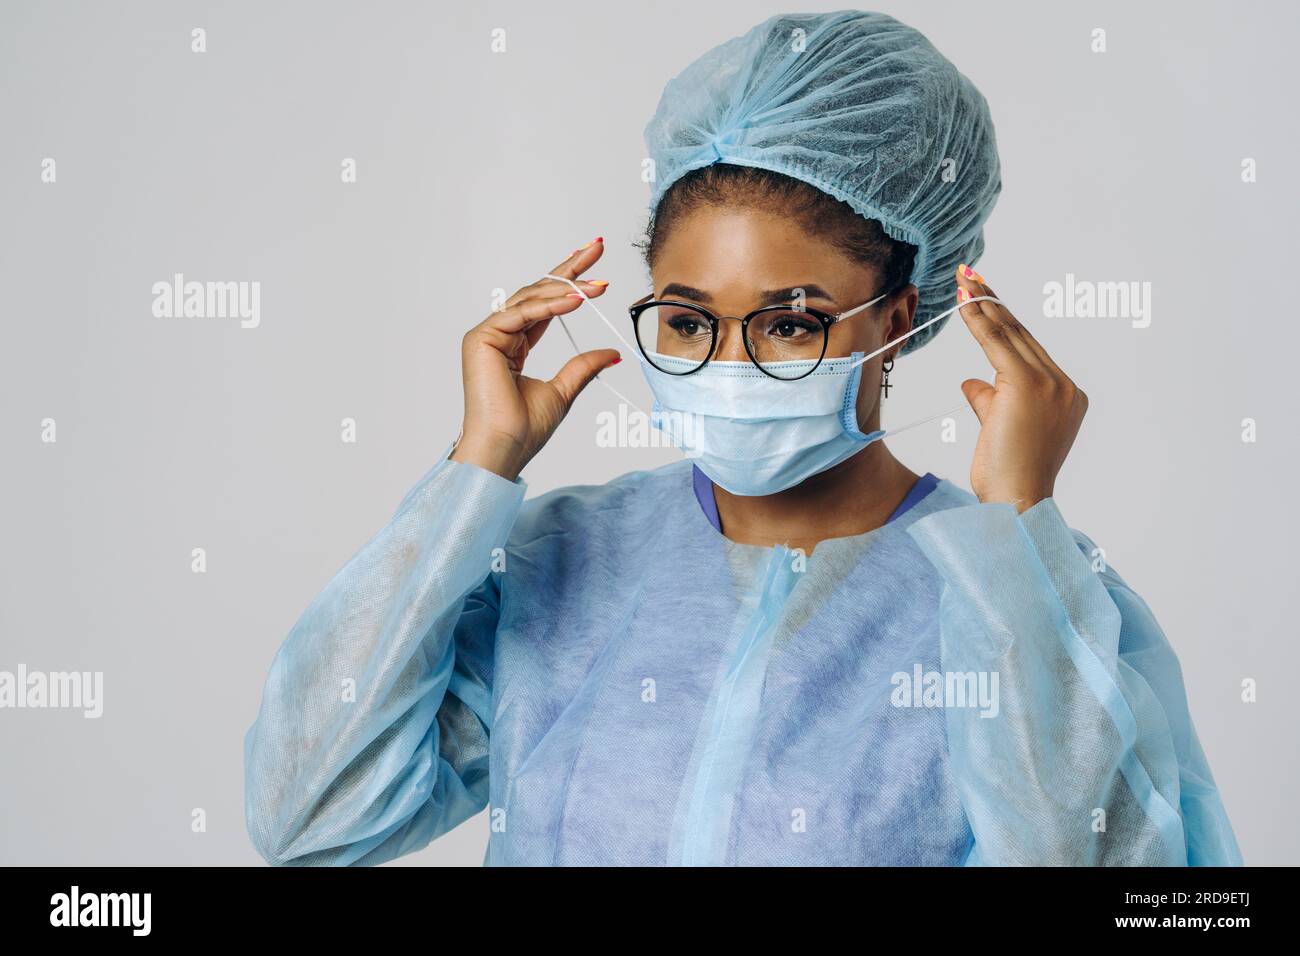 Portrait der jungen afroamerikanischen Ärztin oder Krankenschwester auf medizinischer Schutzkleidung mit Maske Stockfoto